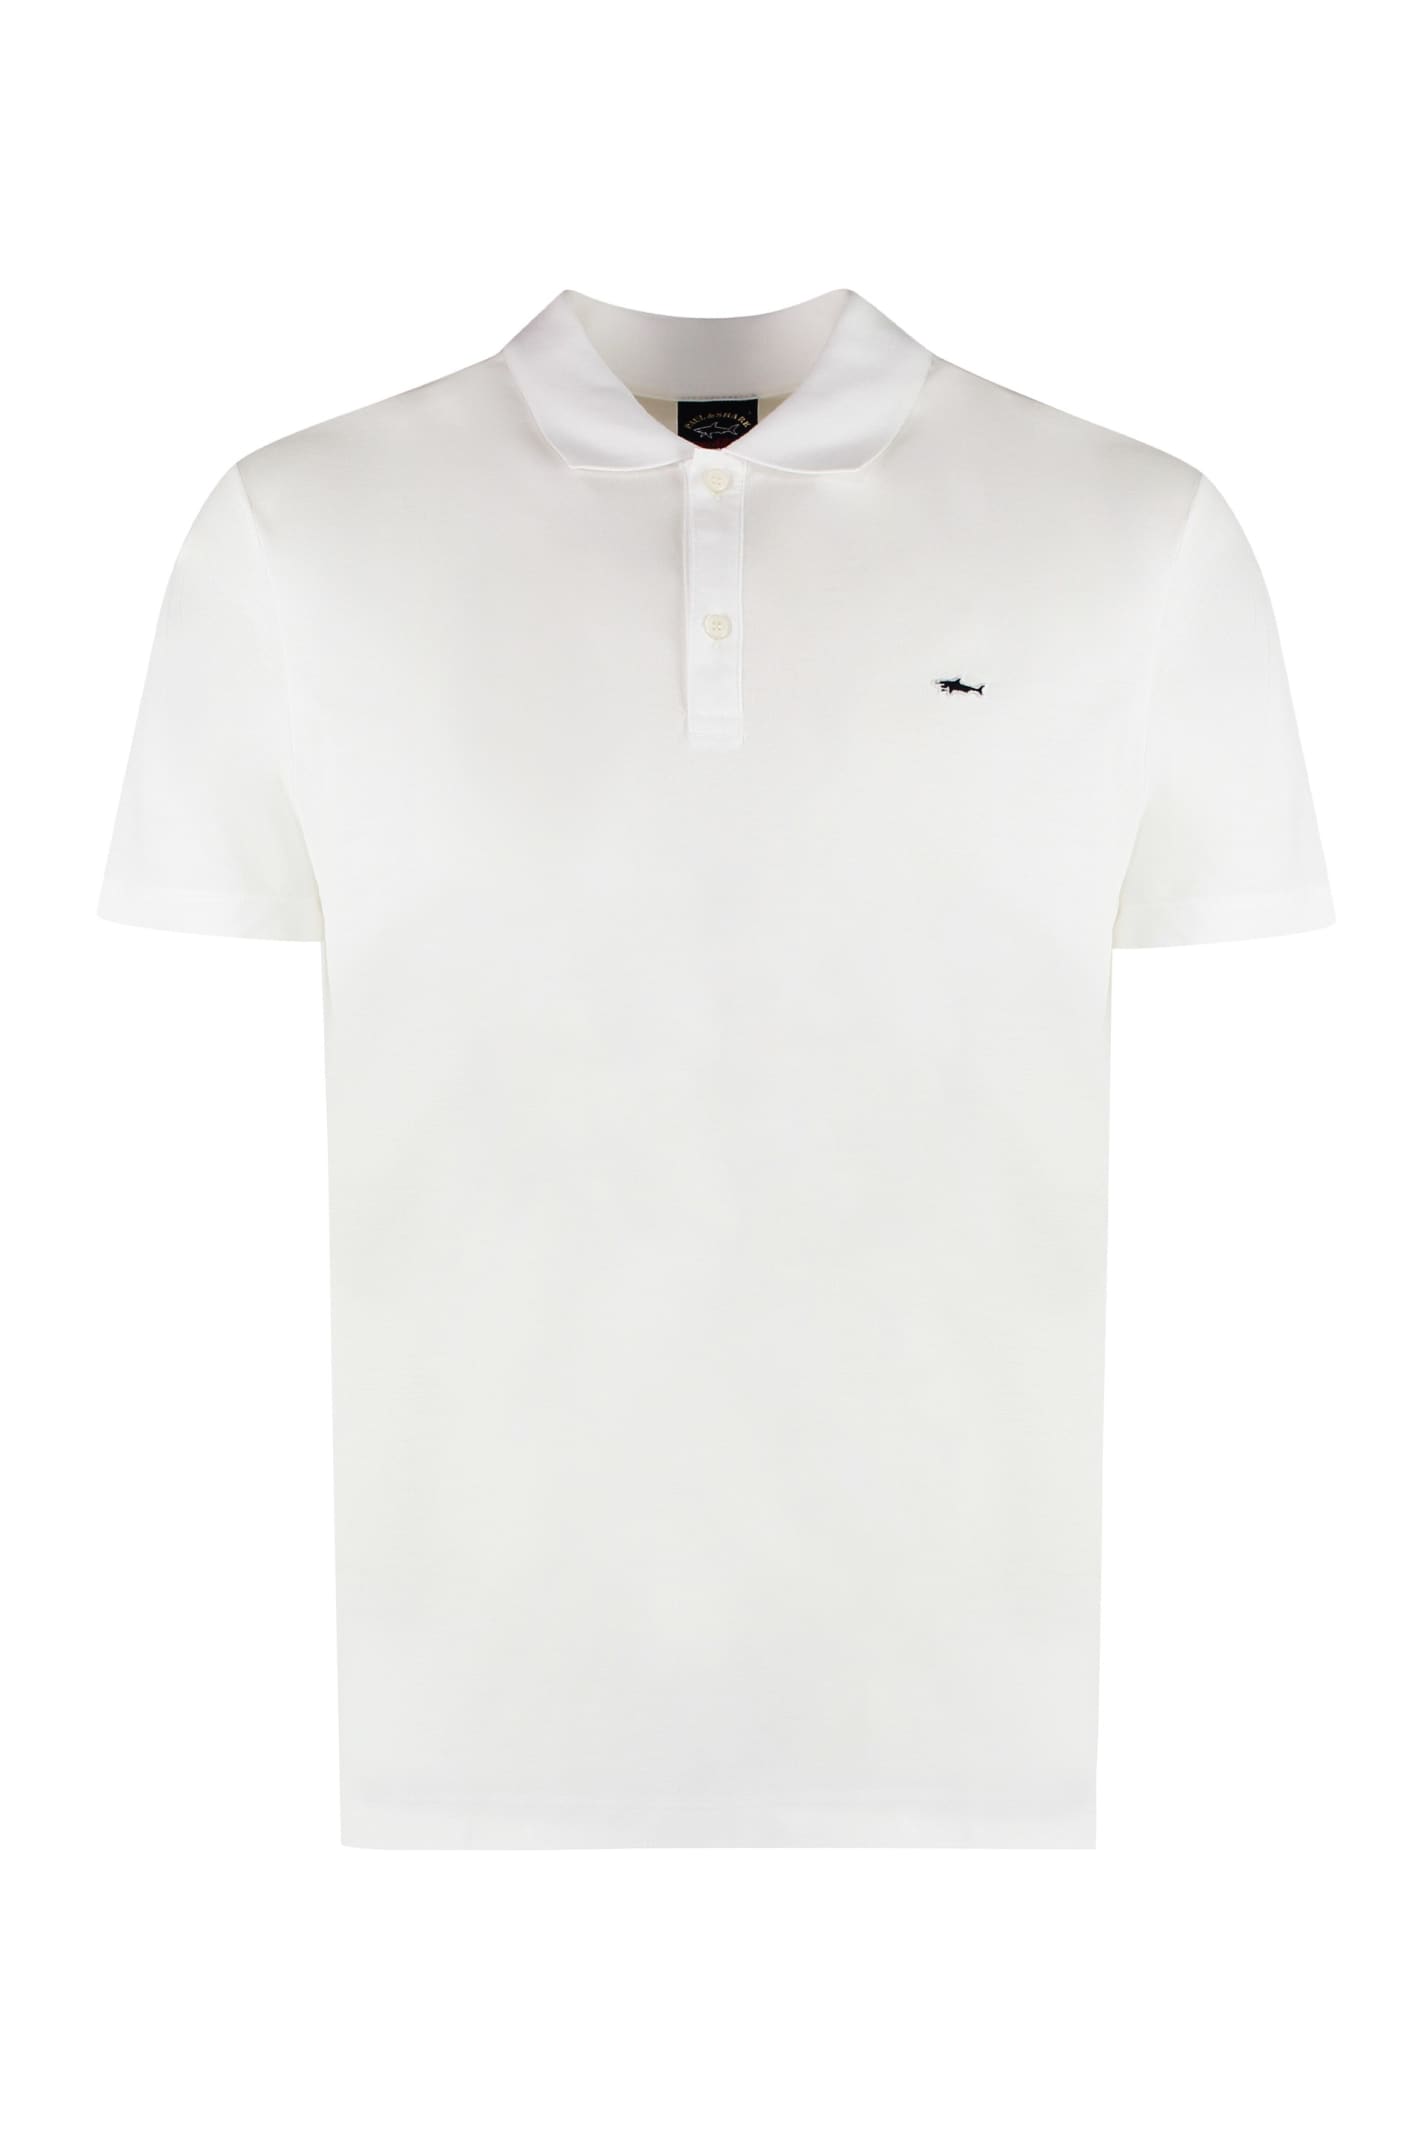 Paul&amp;shark Cotton-piqué Polo Shirt In White